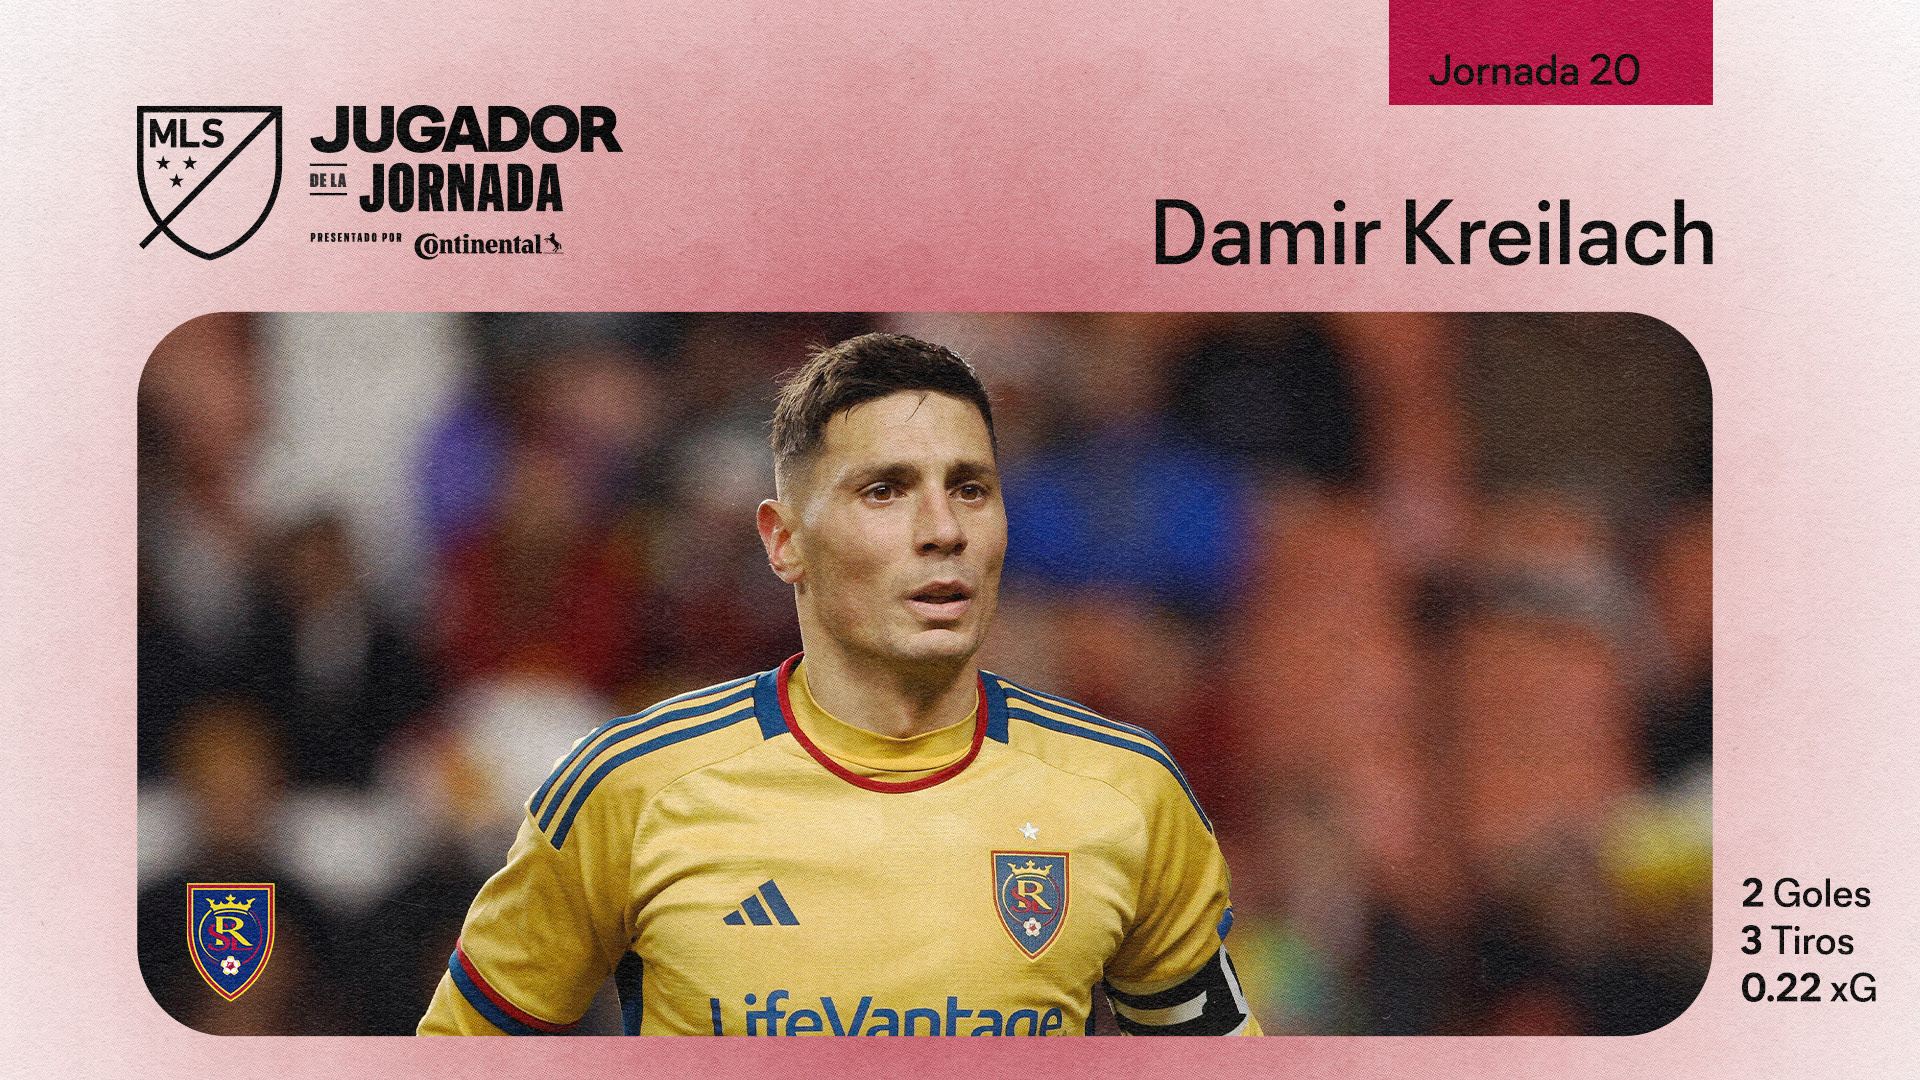 Damir Kreilach, mediocampista de Real Salt Lake, es nombrado Jugador de la Jornada 20 de MLS